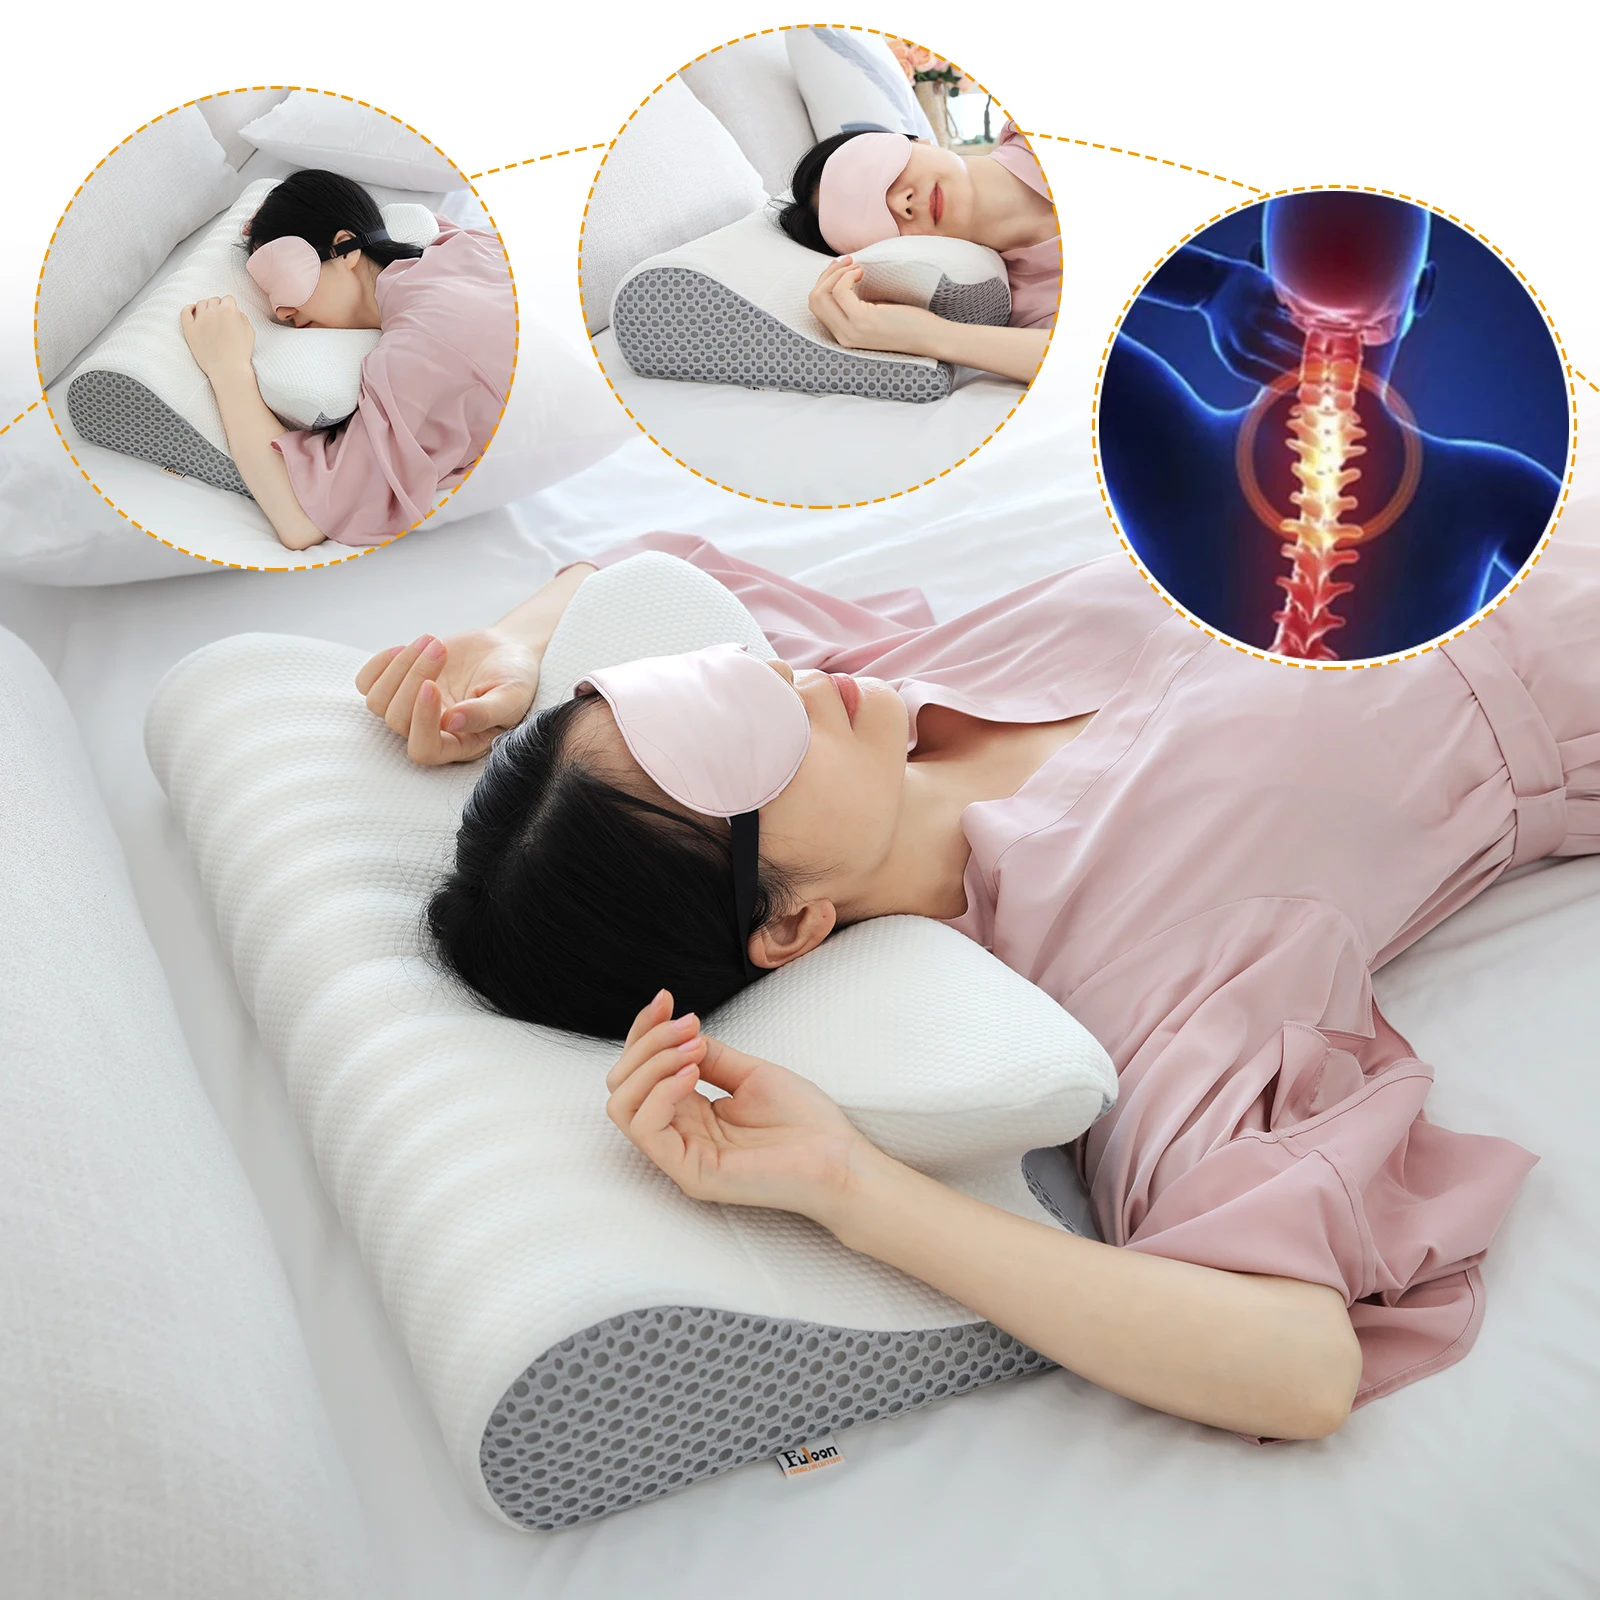 https://ae01.alicdn.com/kf/S0d03e164327a4ef7b1601ddd427478d7W/Fuloon-Contour-Memory-Foam-Cervical-Pillow-Ergonomic-Orthopedic-Neck-Pain-Pillow-for-Side-Back-Stomach-Sleeper.jpg